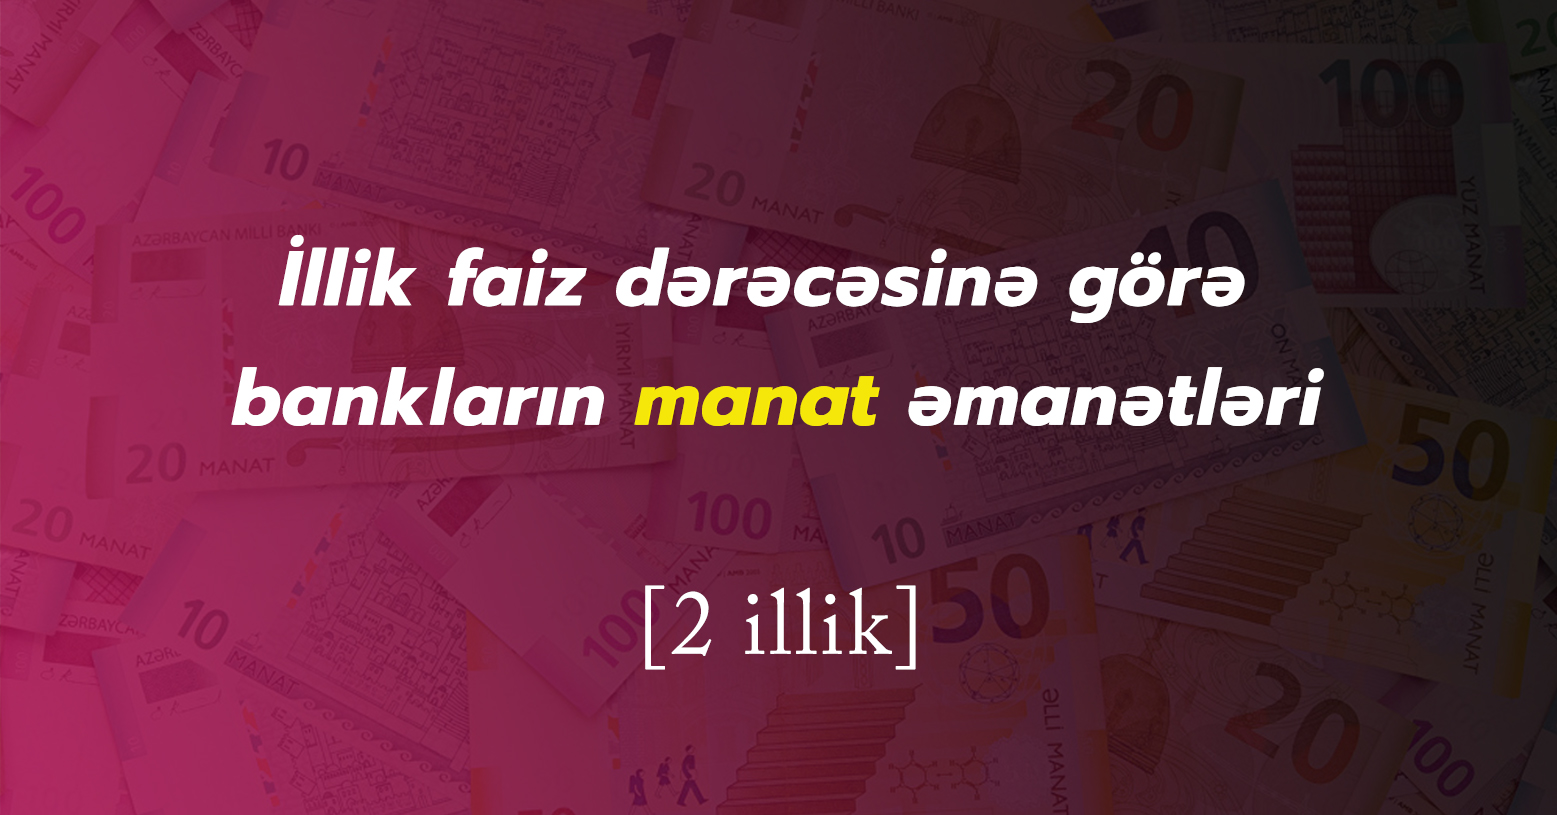 2 illik manat əmanətinin ən sərfəli olduğu banklar - 2020 Yanvar